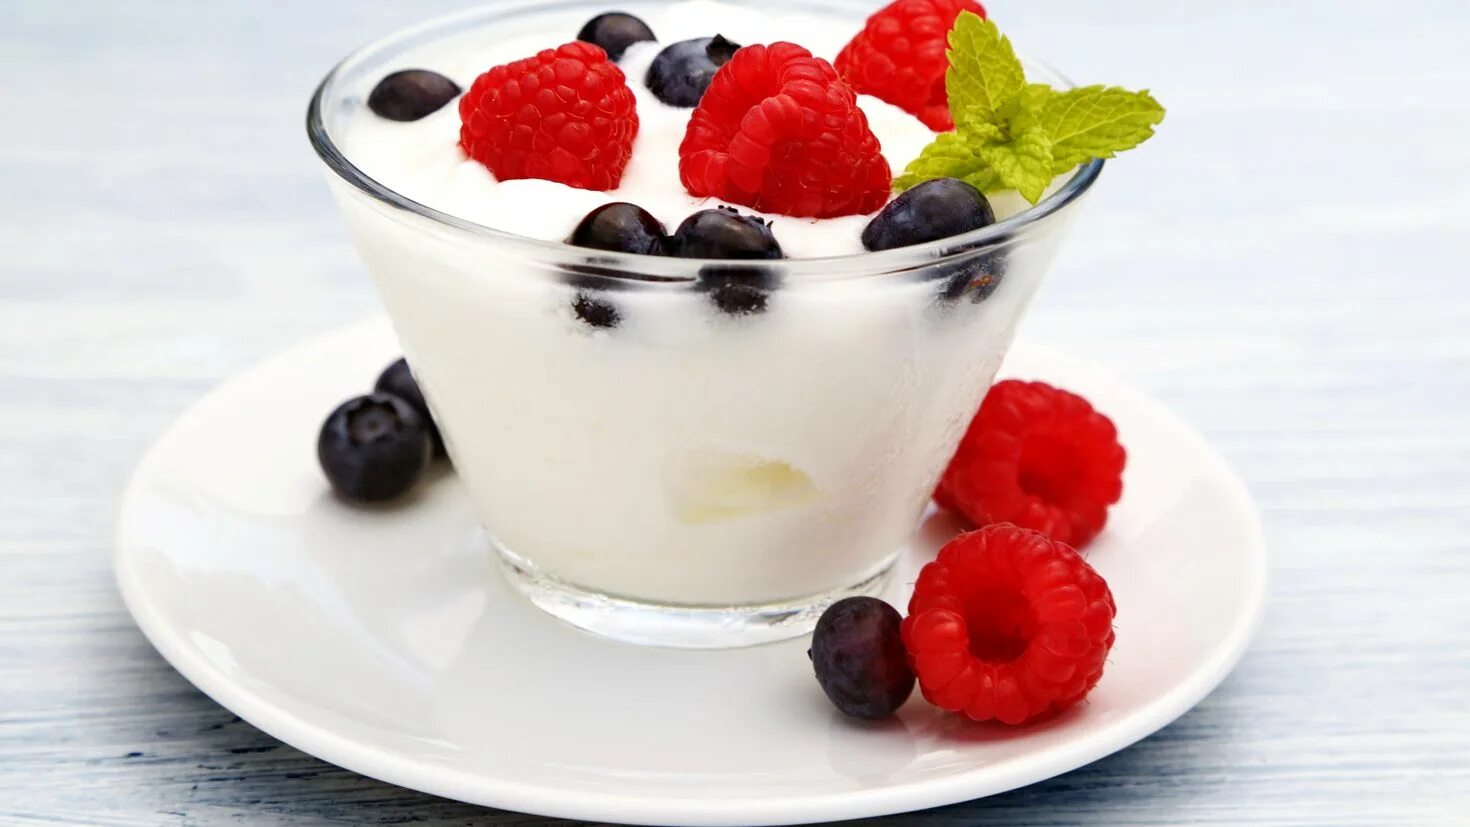 Фото йогурта. Йогурт. Йогурт с ягодами. Натуральный йогурт с ягодами. Йогурт картинка.